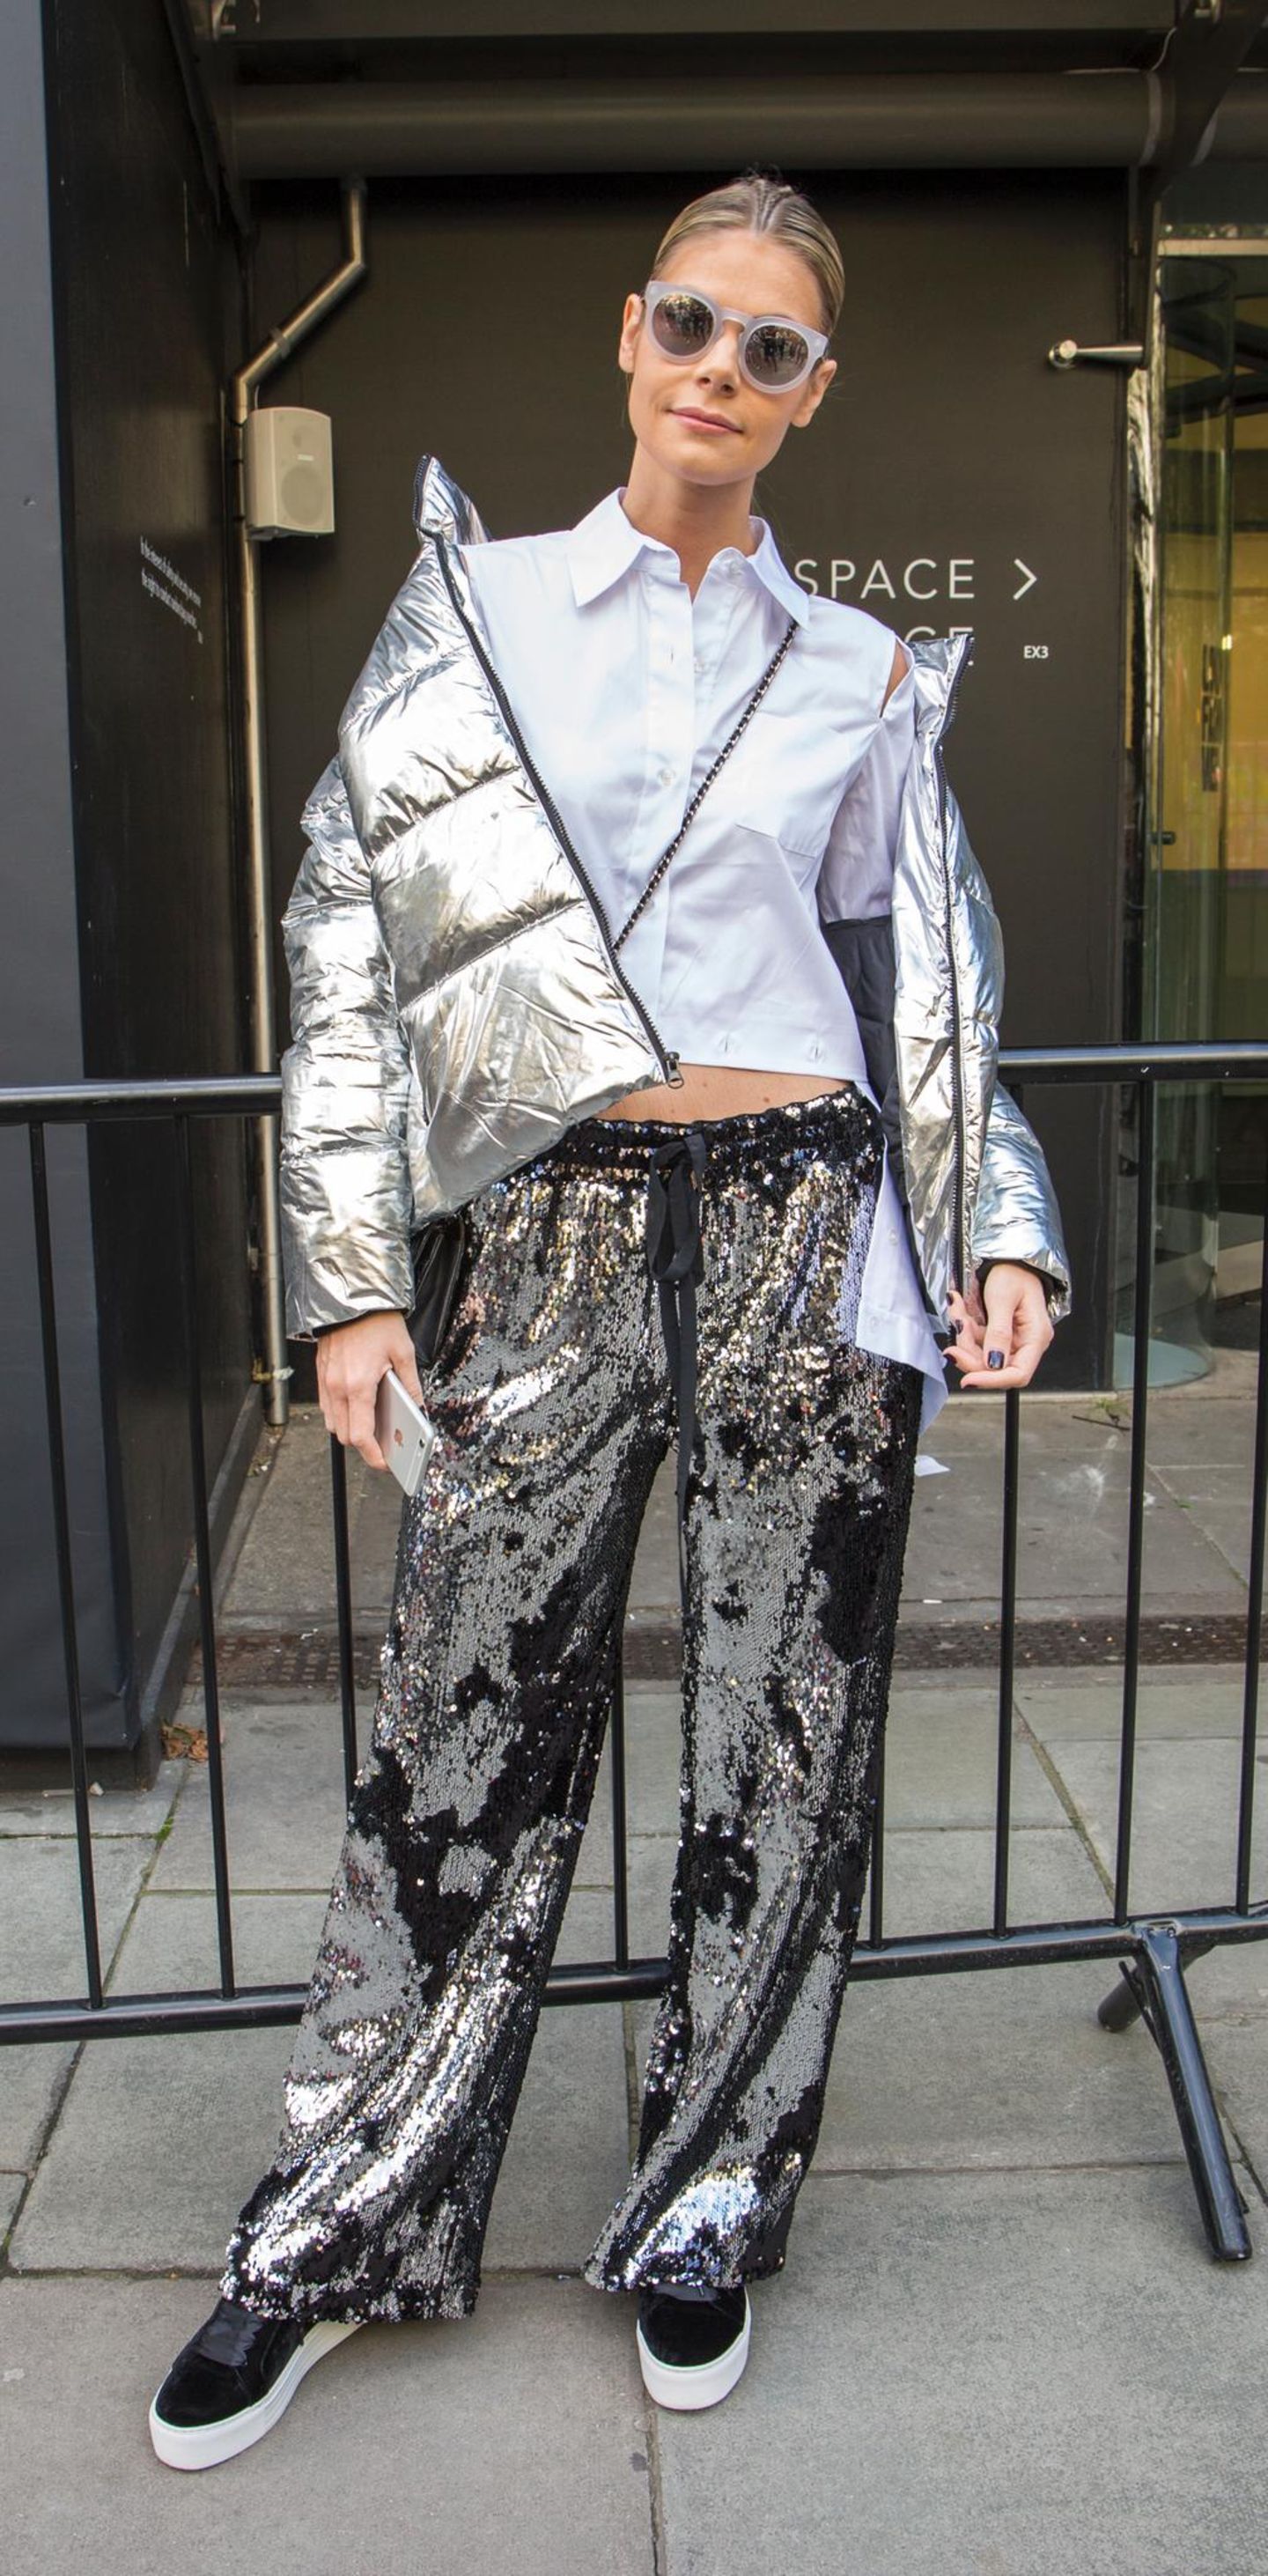 Streetstyle mit Pailletten-Hose von der London Fashion Week